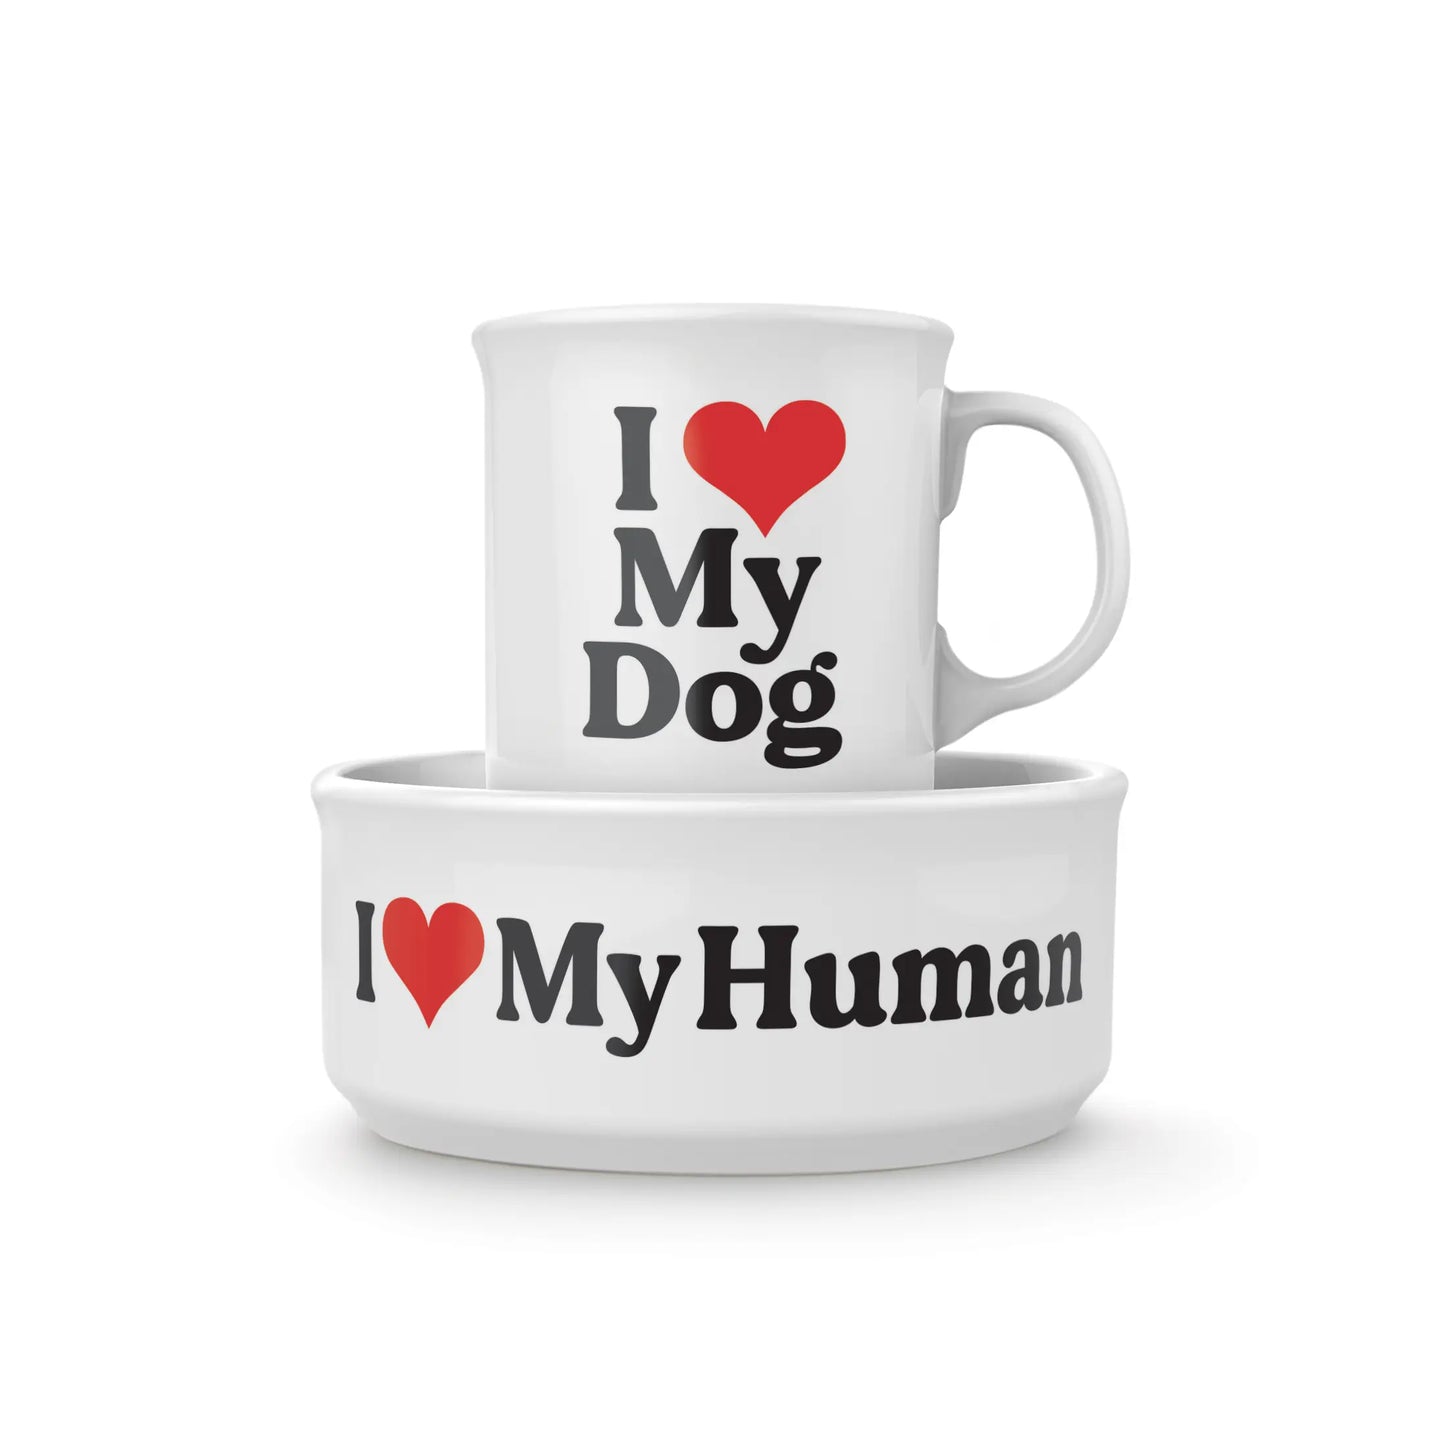 Matching Mug + Dog Bowl